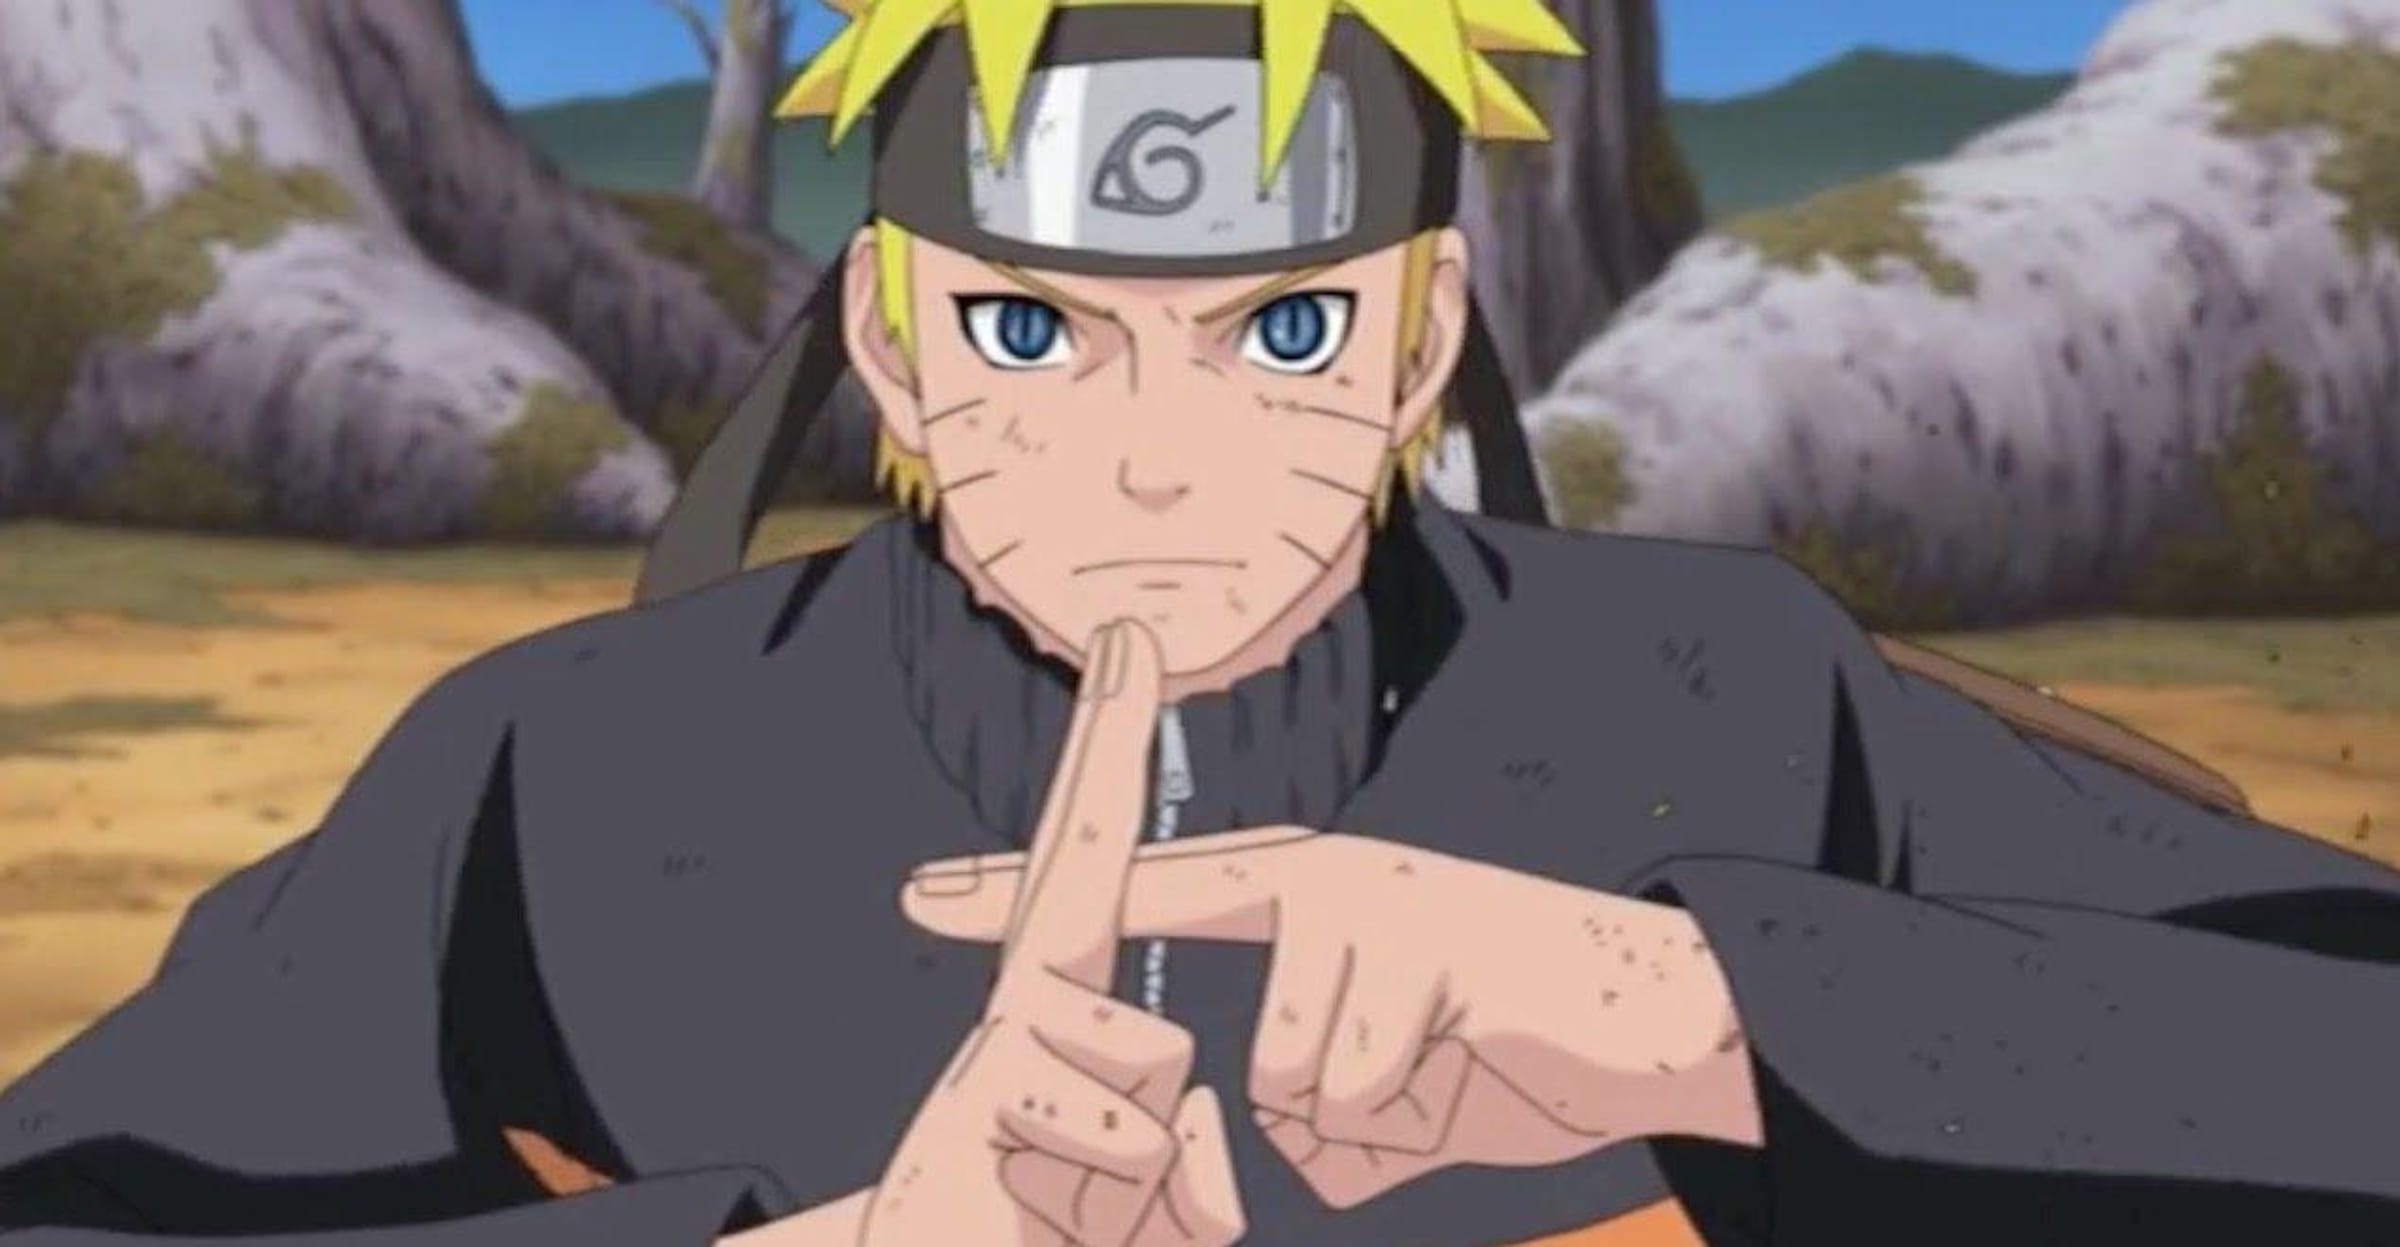 Qual seu ninja preferido de Naruto?